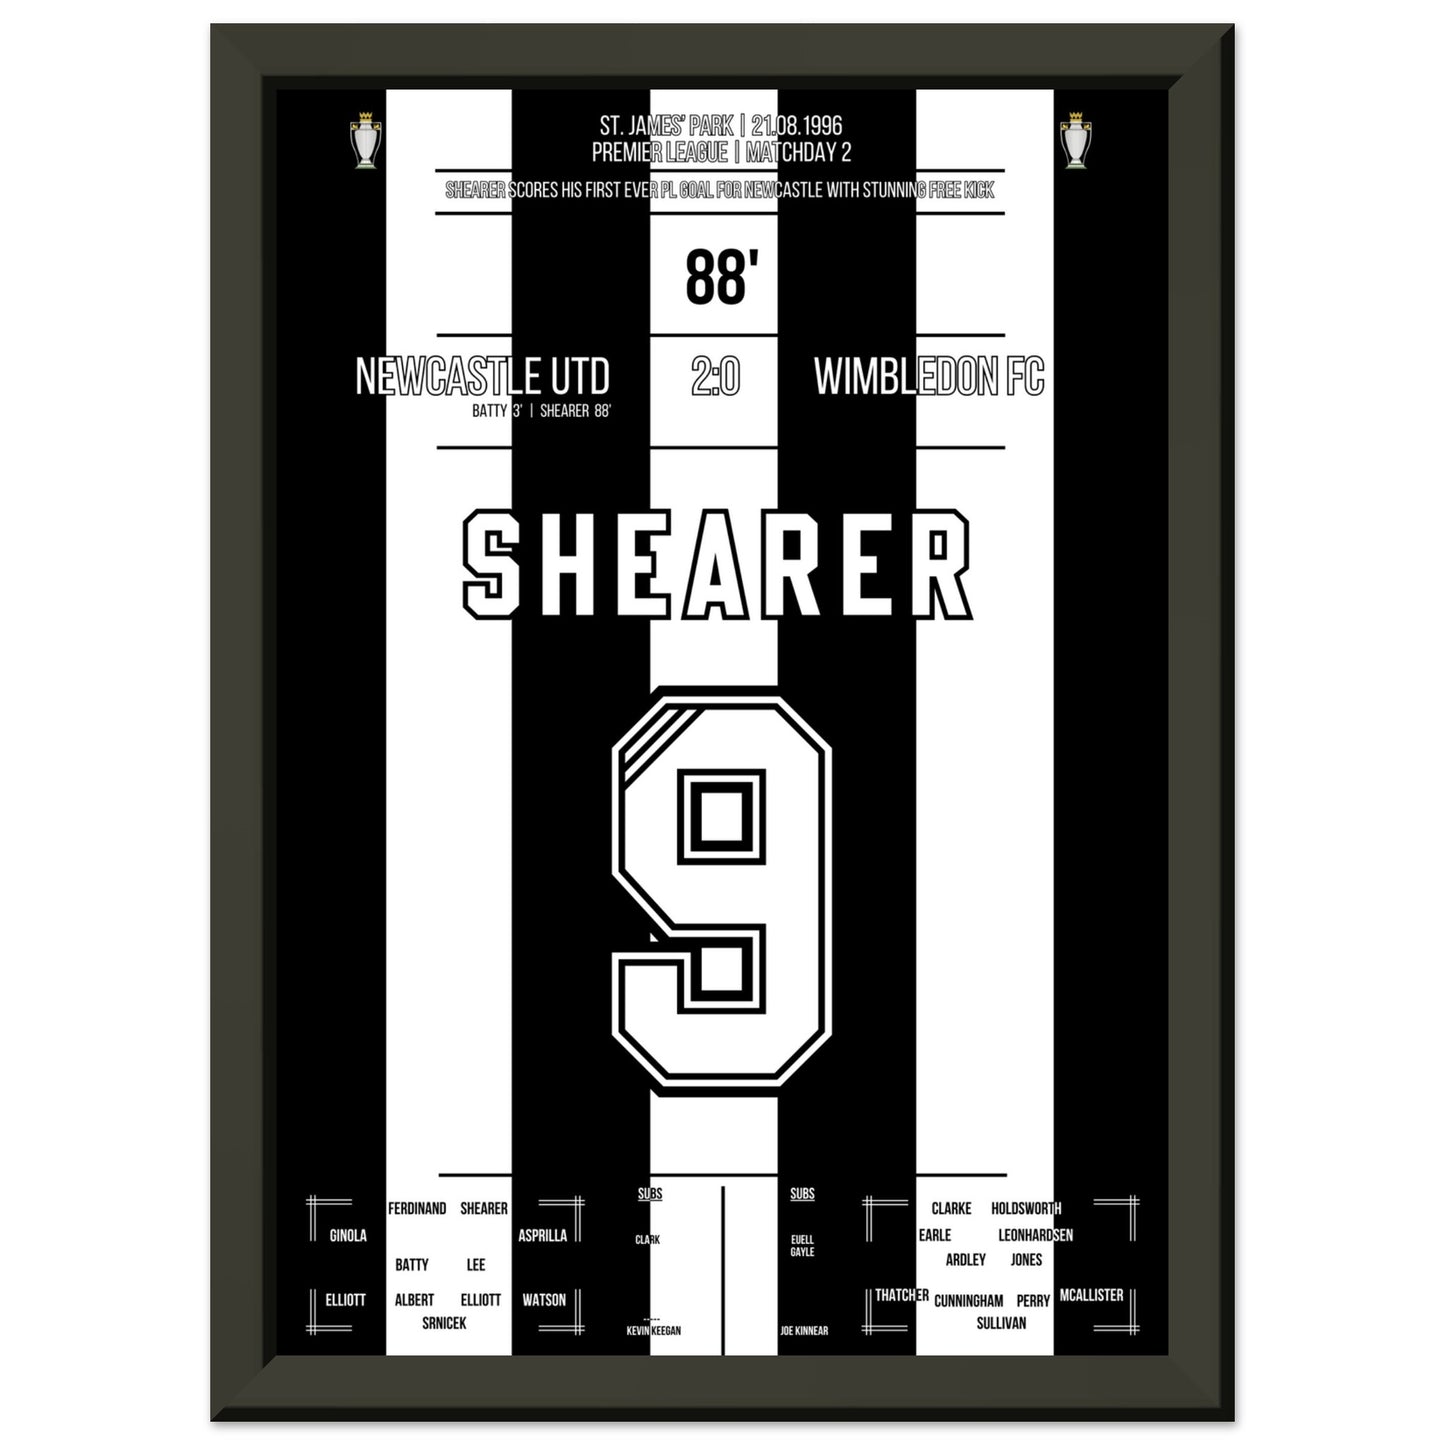 Shearer's erstes PL-Tor vor Newcastle